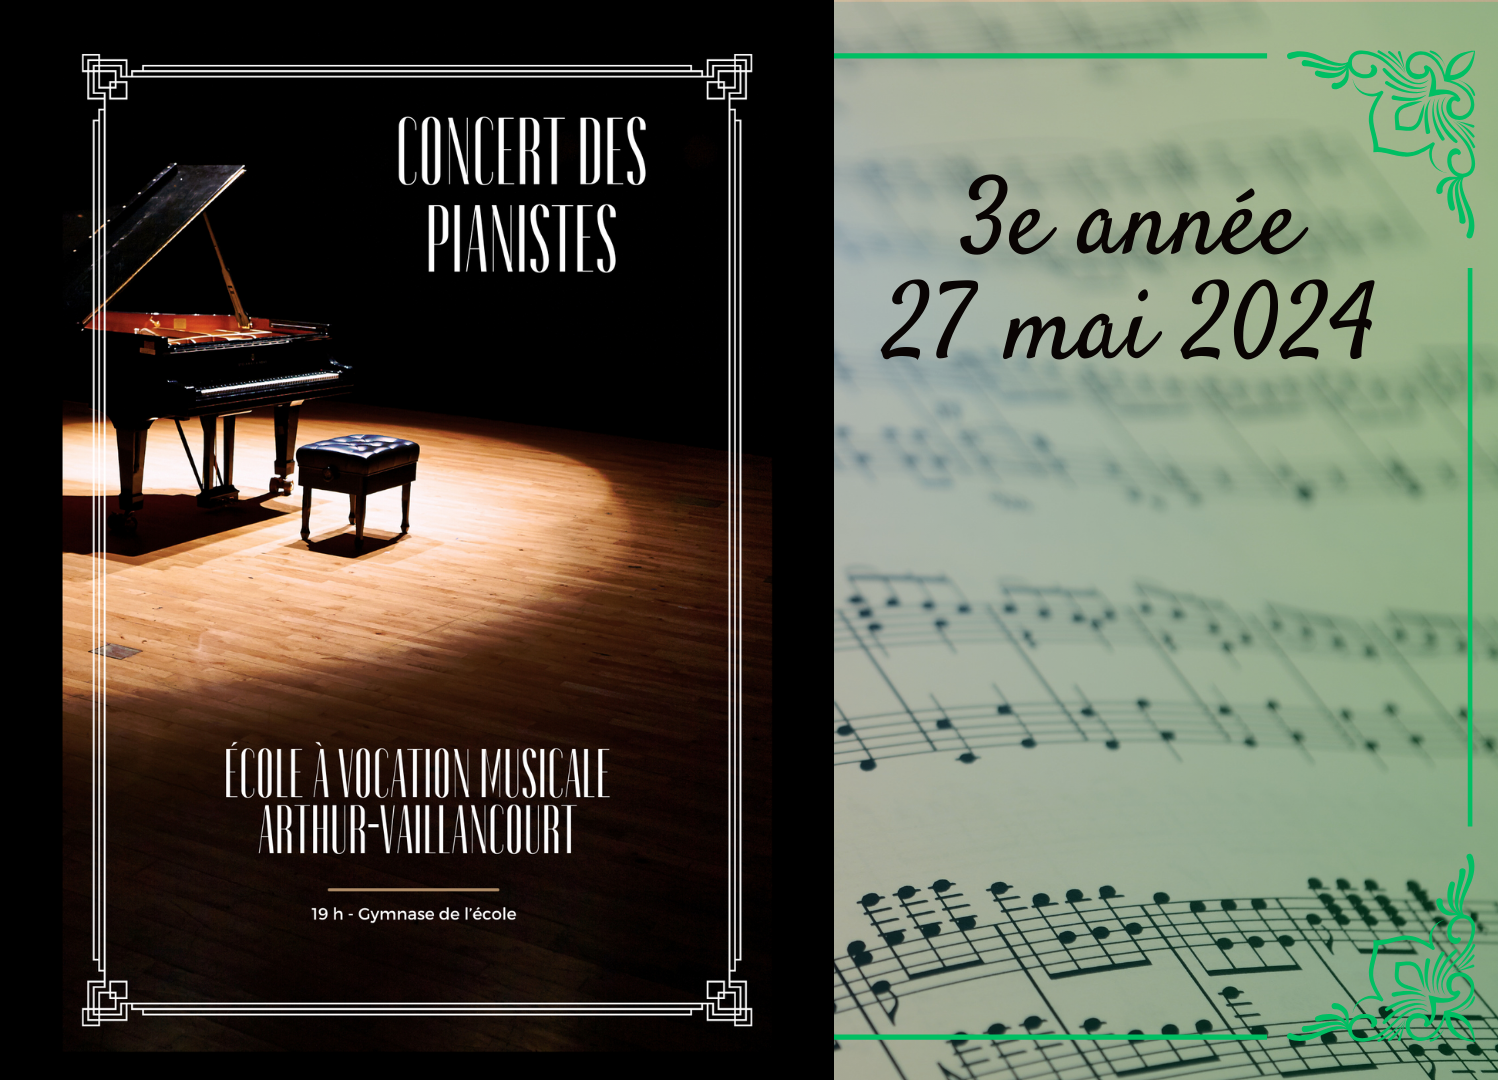 Concert de piano - 3e année (27 mai 2024)